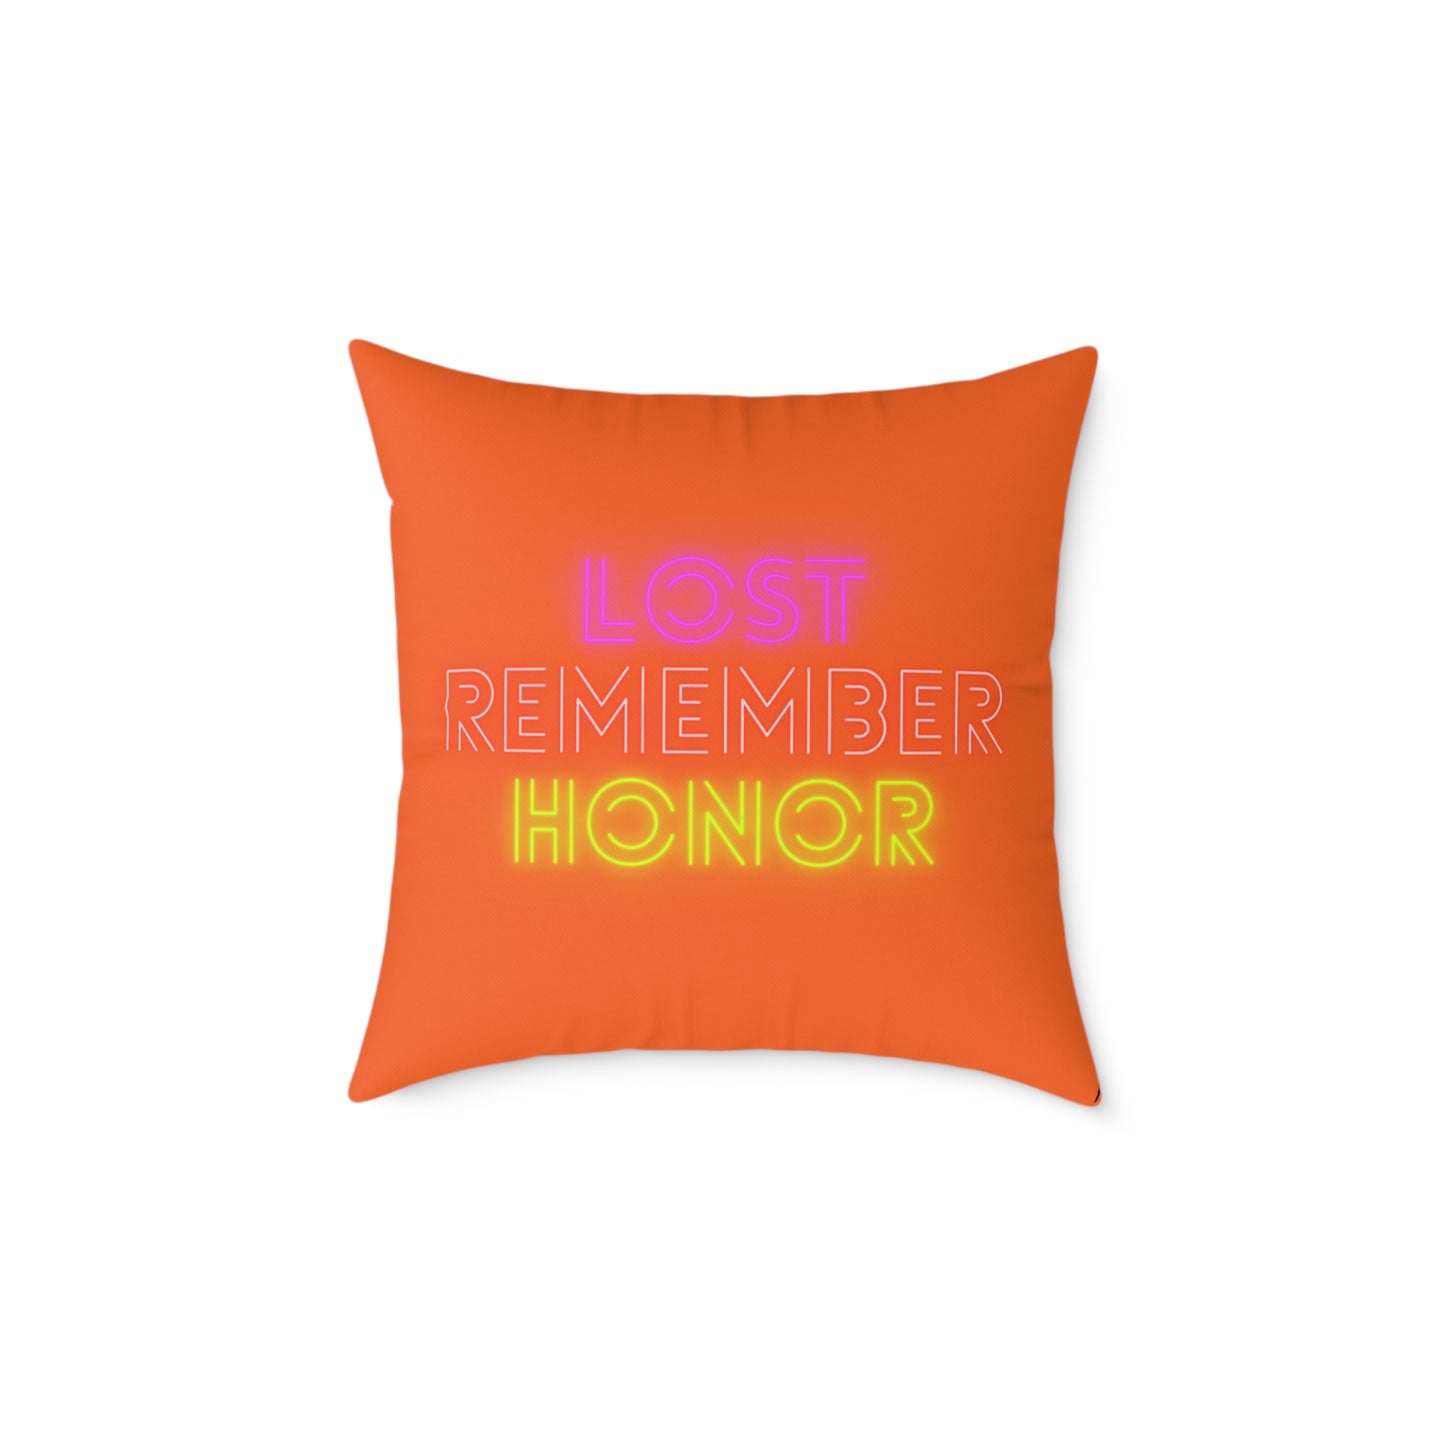 Spun Polyester Pillow: Dragons Orange